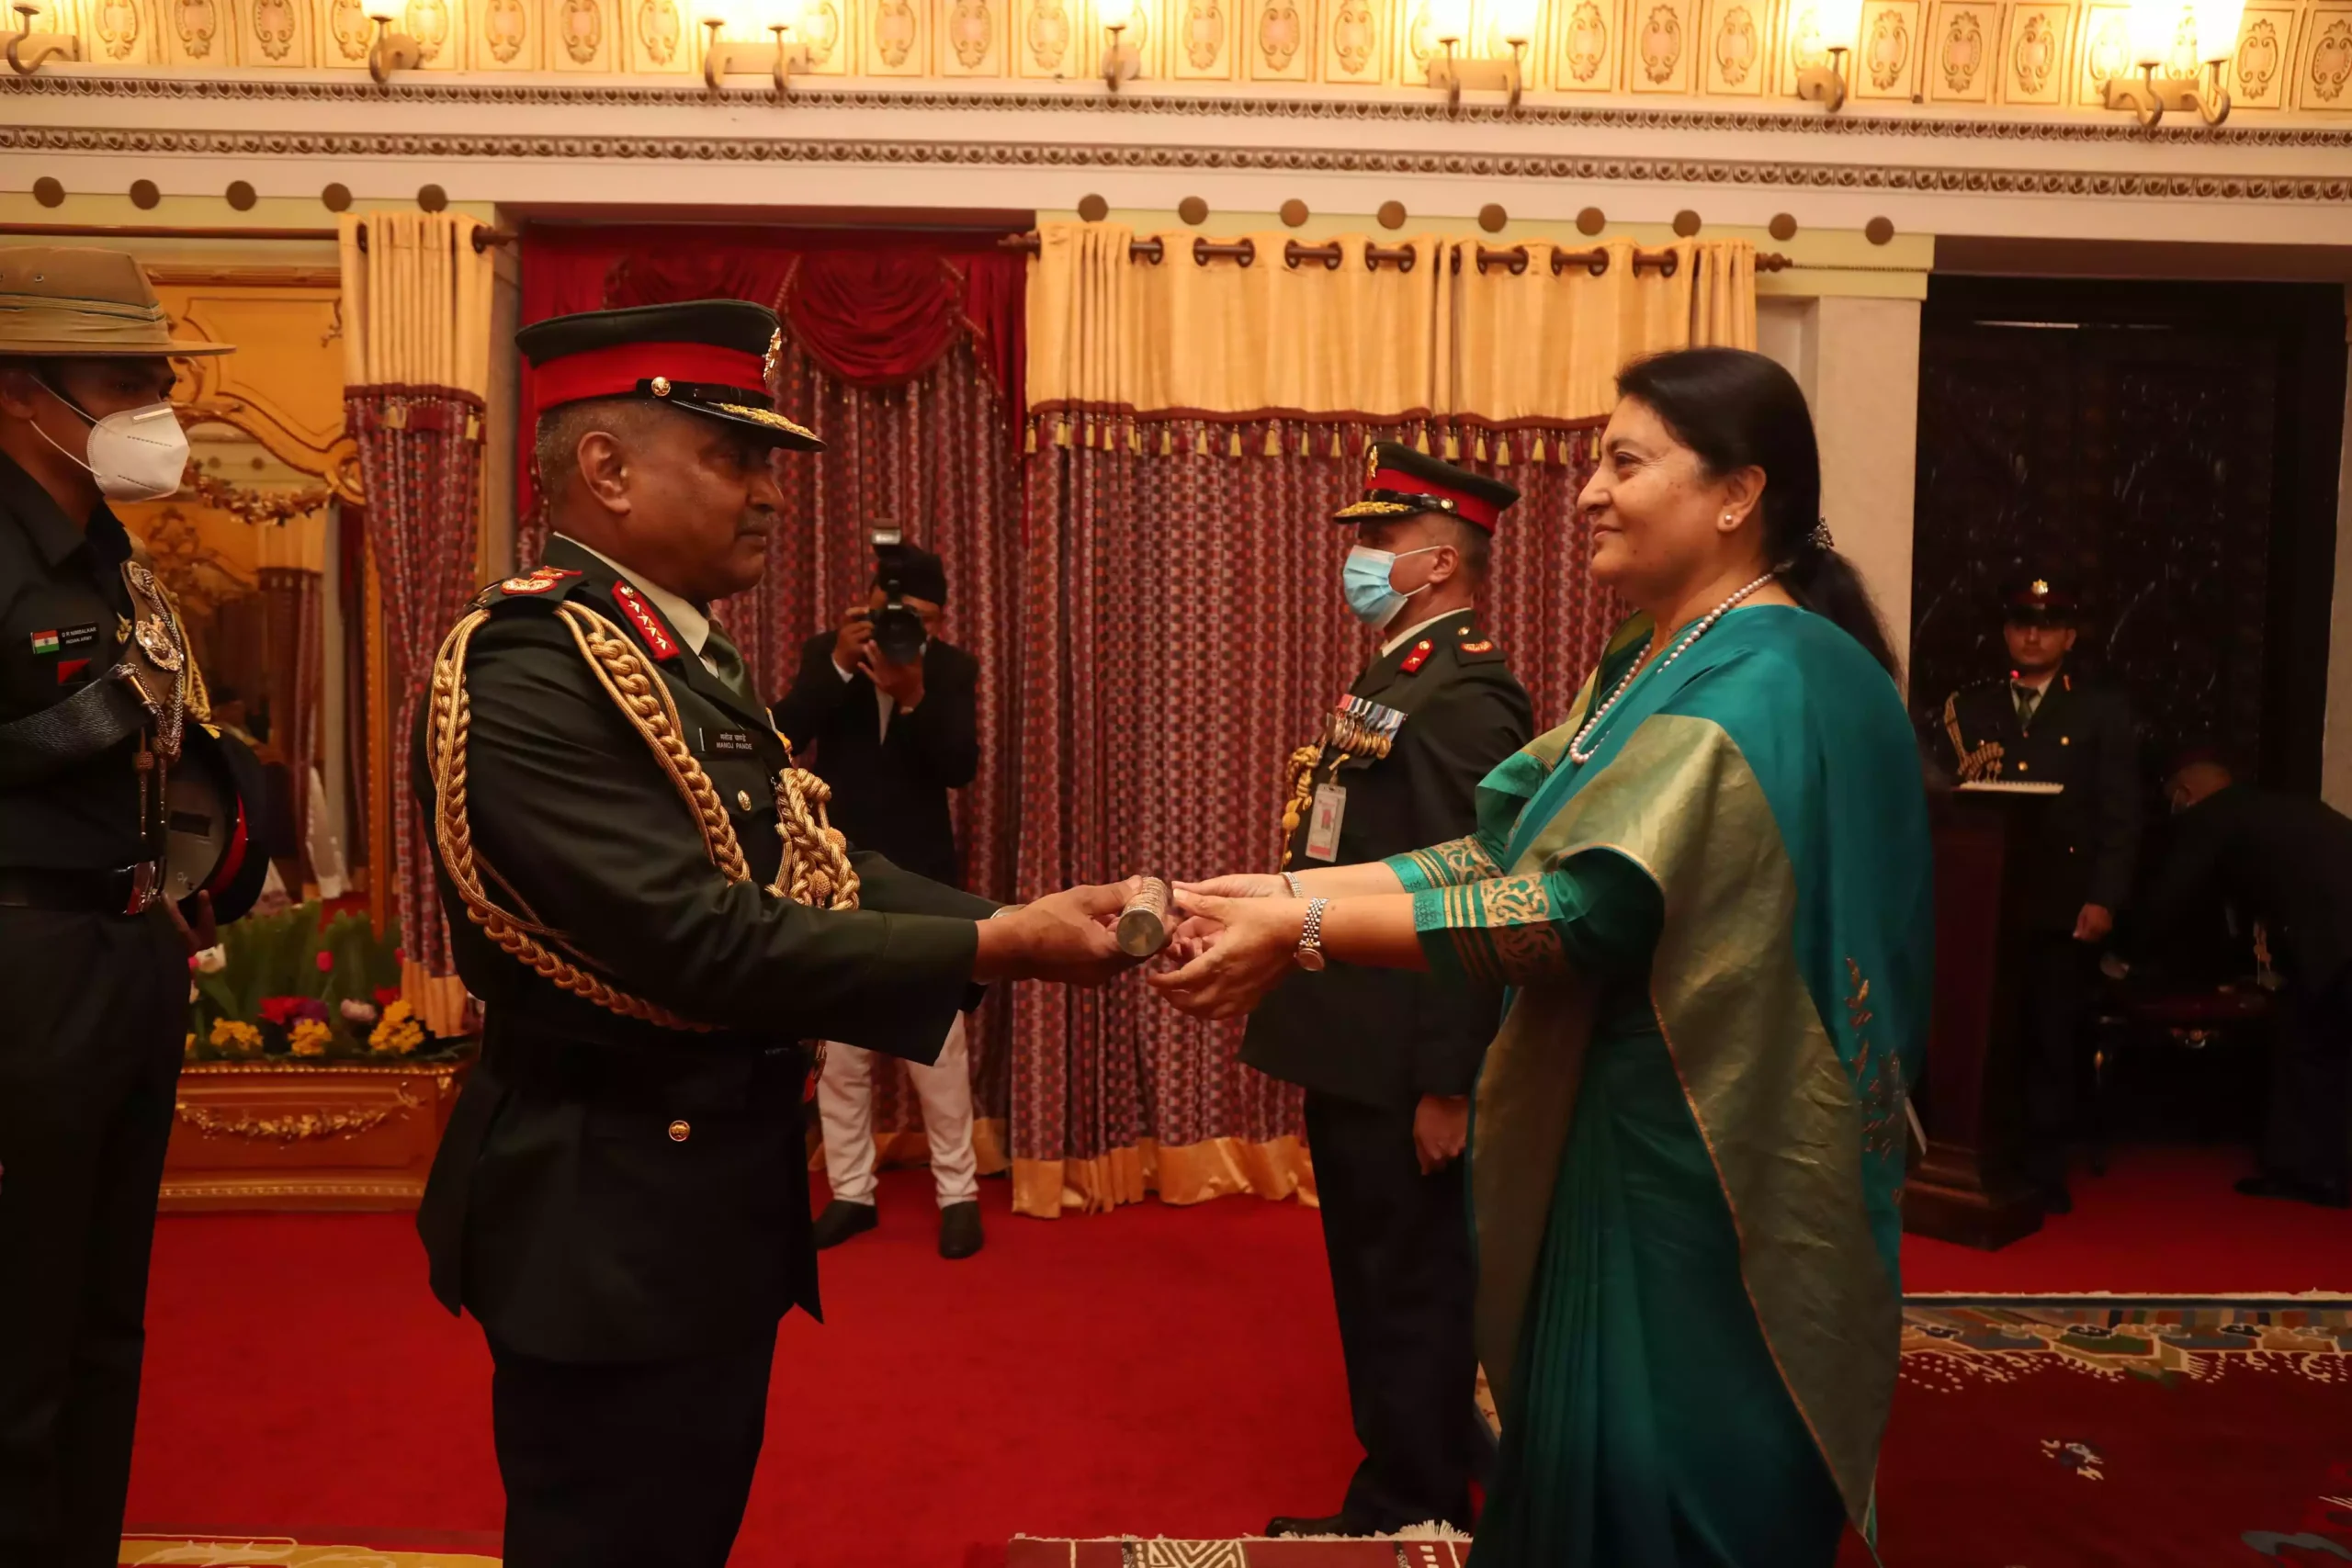 भारतीय सेनाध्यक्ष पाण्डेलाई राष्ट्रपतिले प्रदान गरिन दज्र्यानी चिह्न